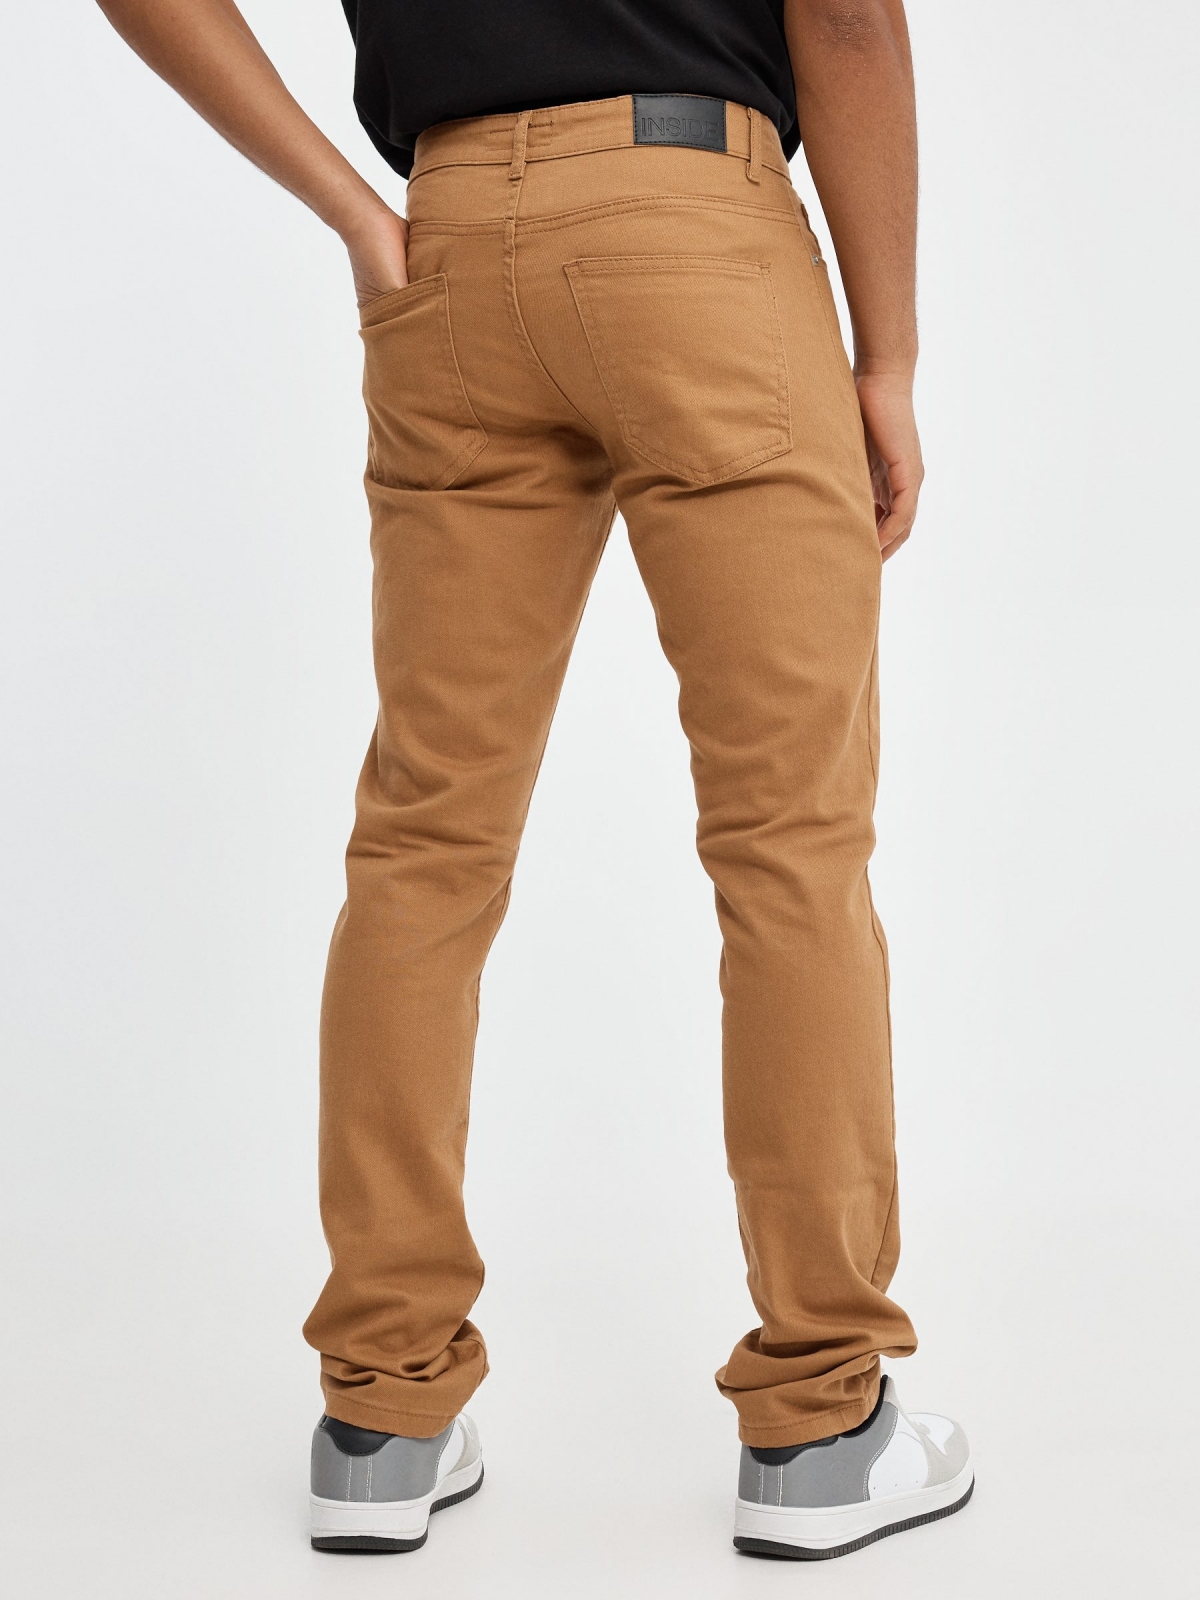 Jeans básicos de colores marrón vista media trasera